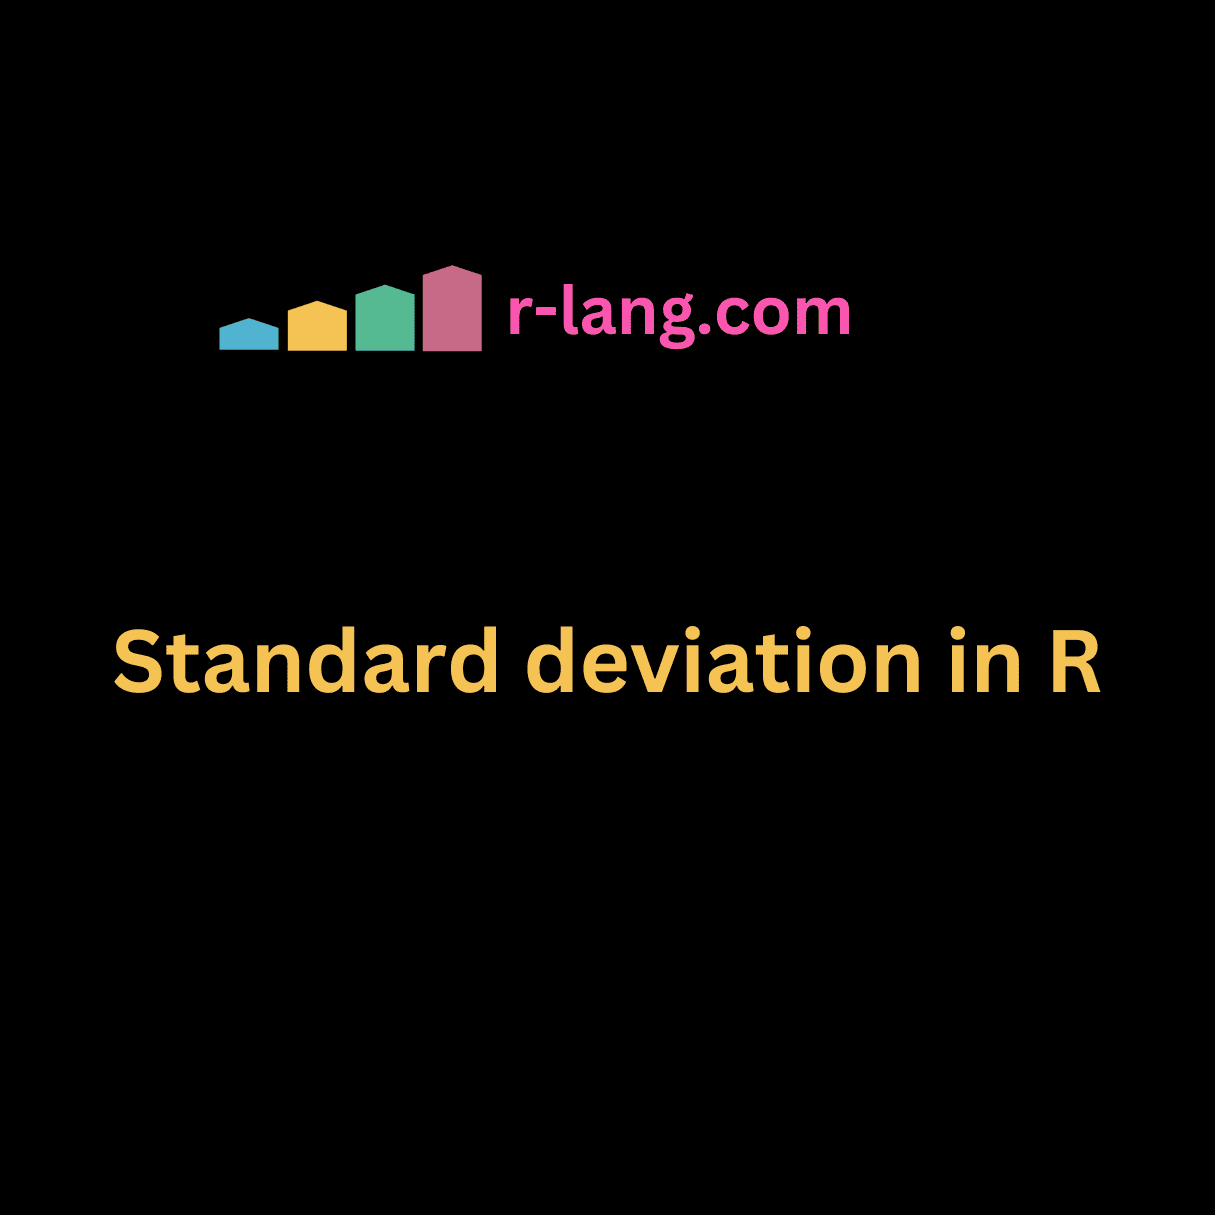 Standard deviation in R